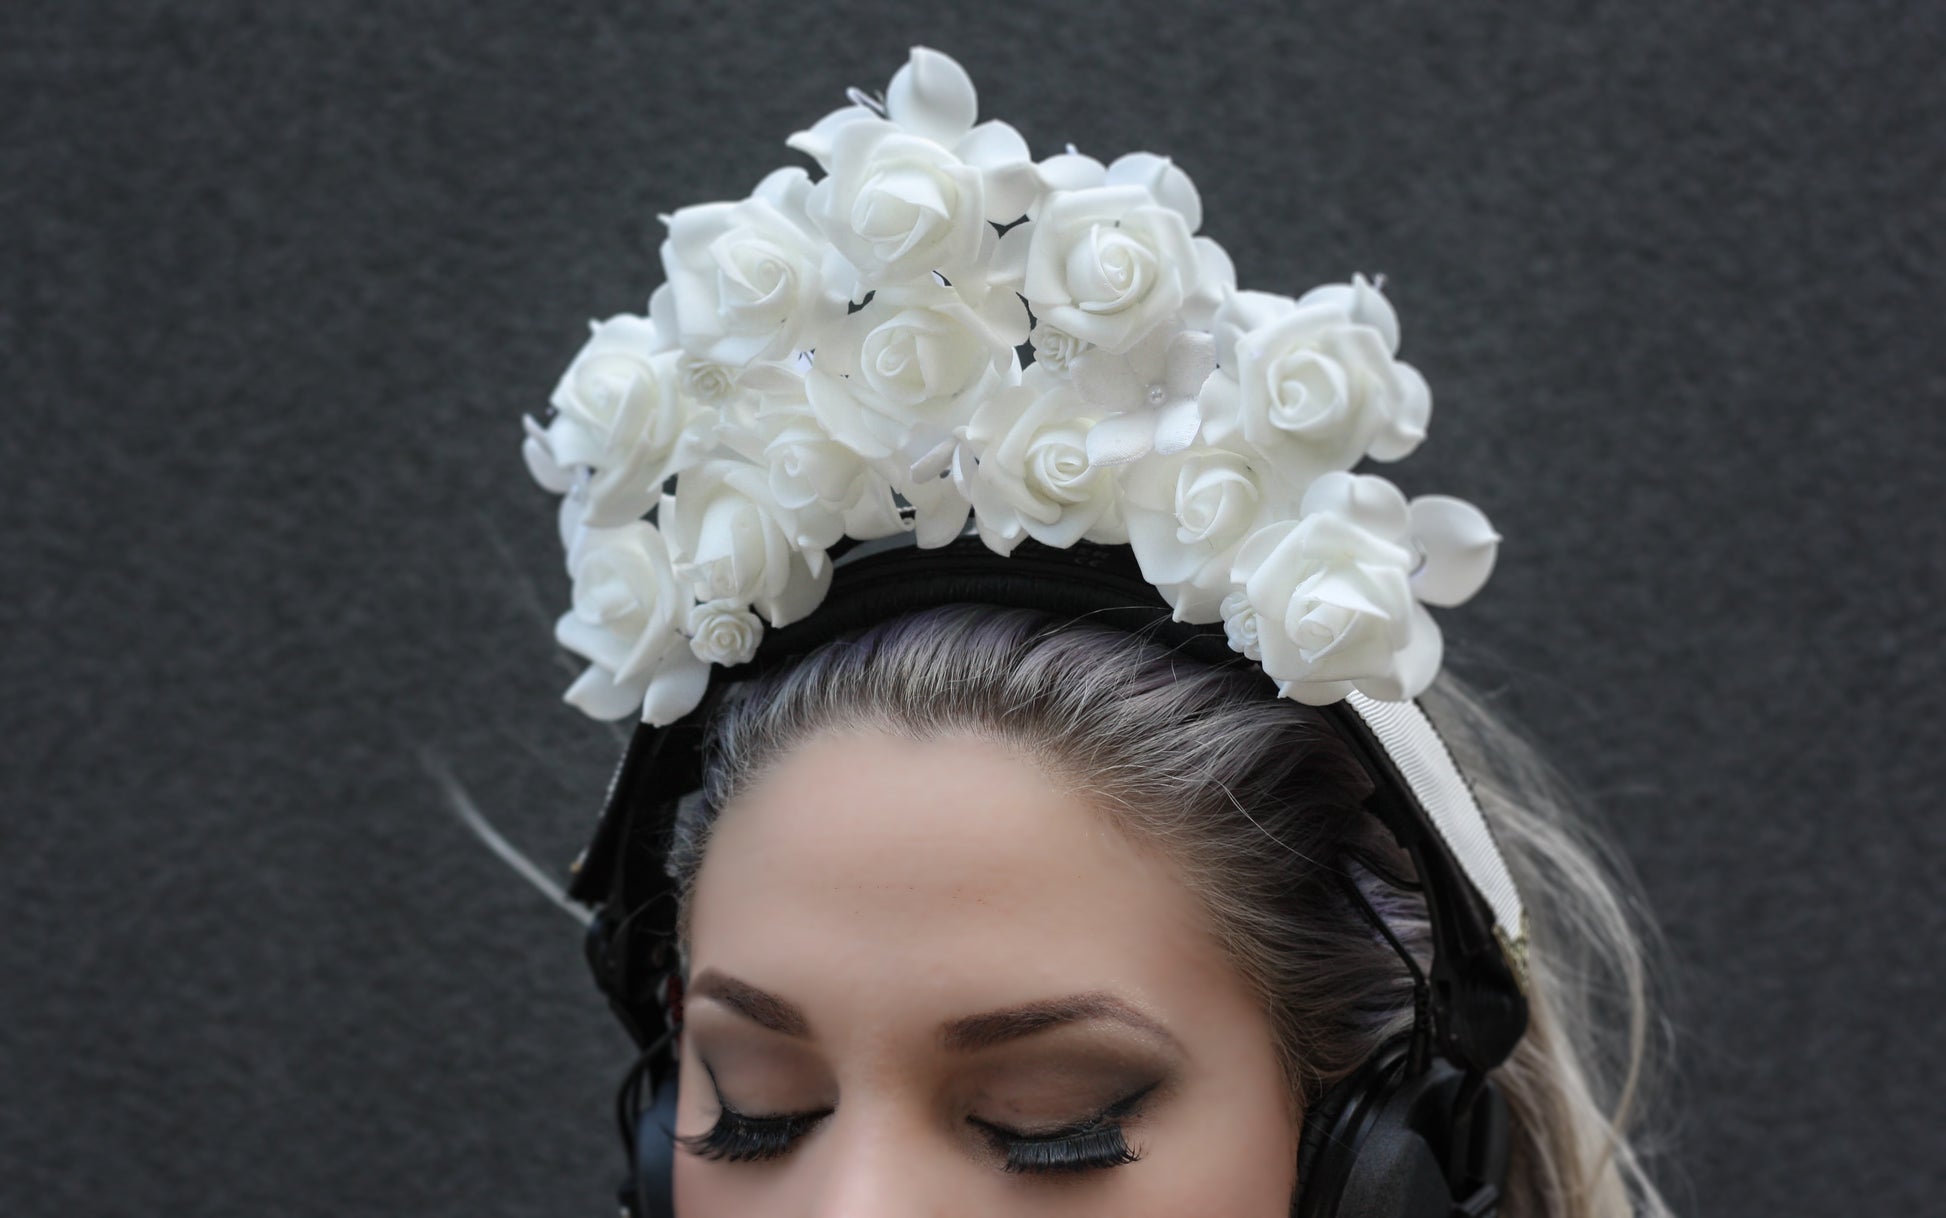 floral headphone crown headphone accessories